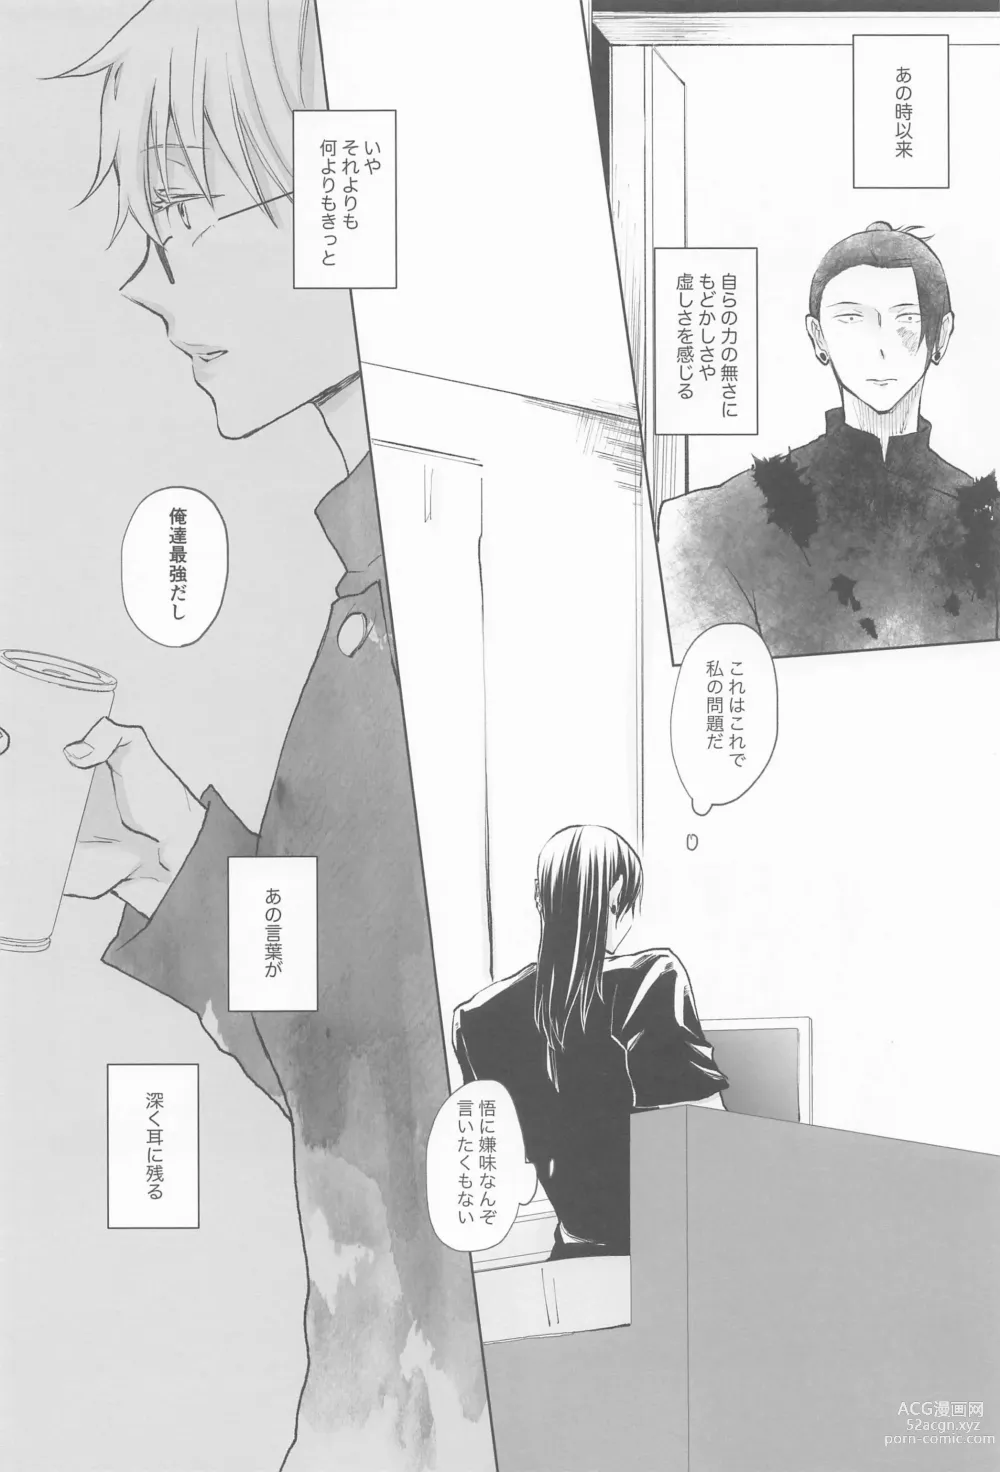 Page 9 of doujinshi Kimi de Michiru Sekai